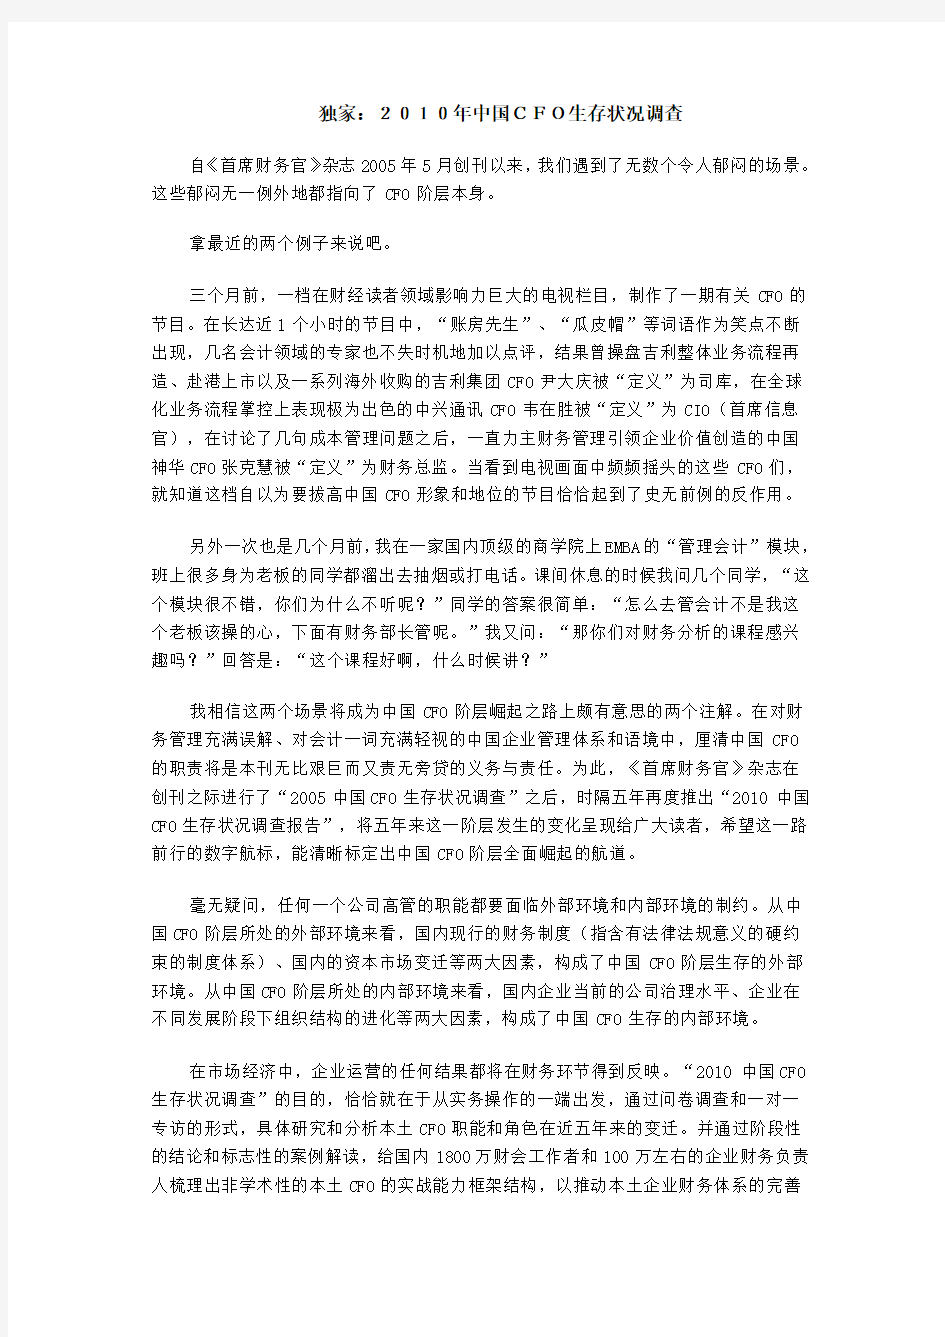 2010年中国CFO生存状况调查